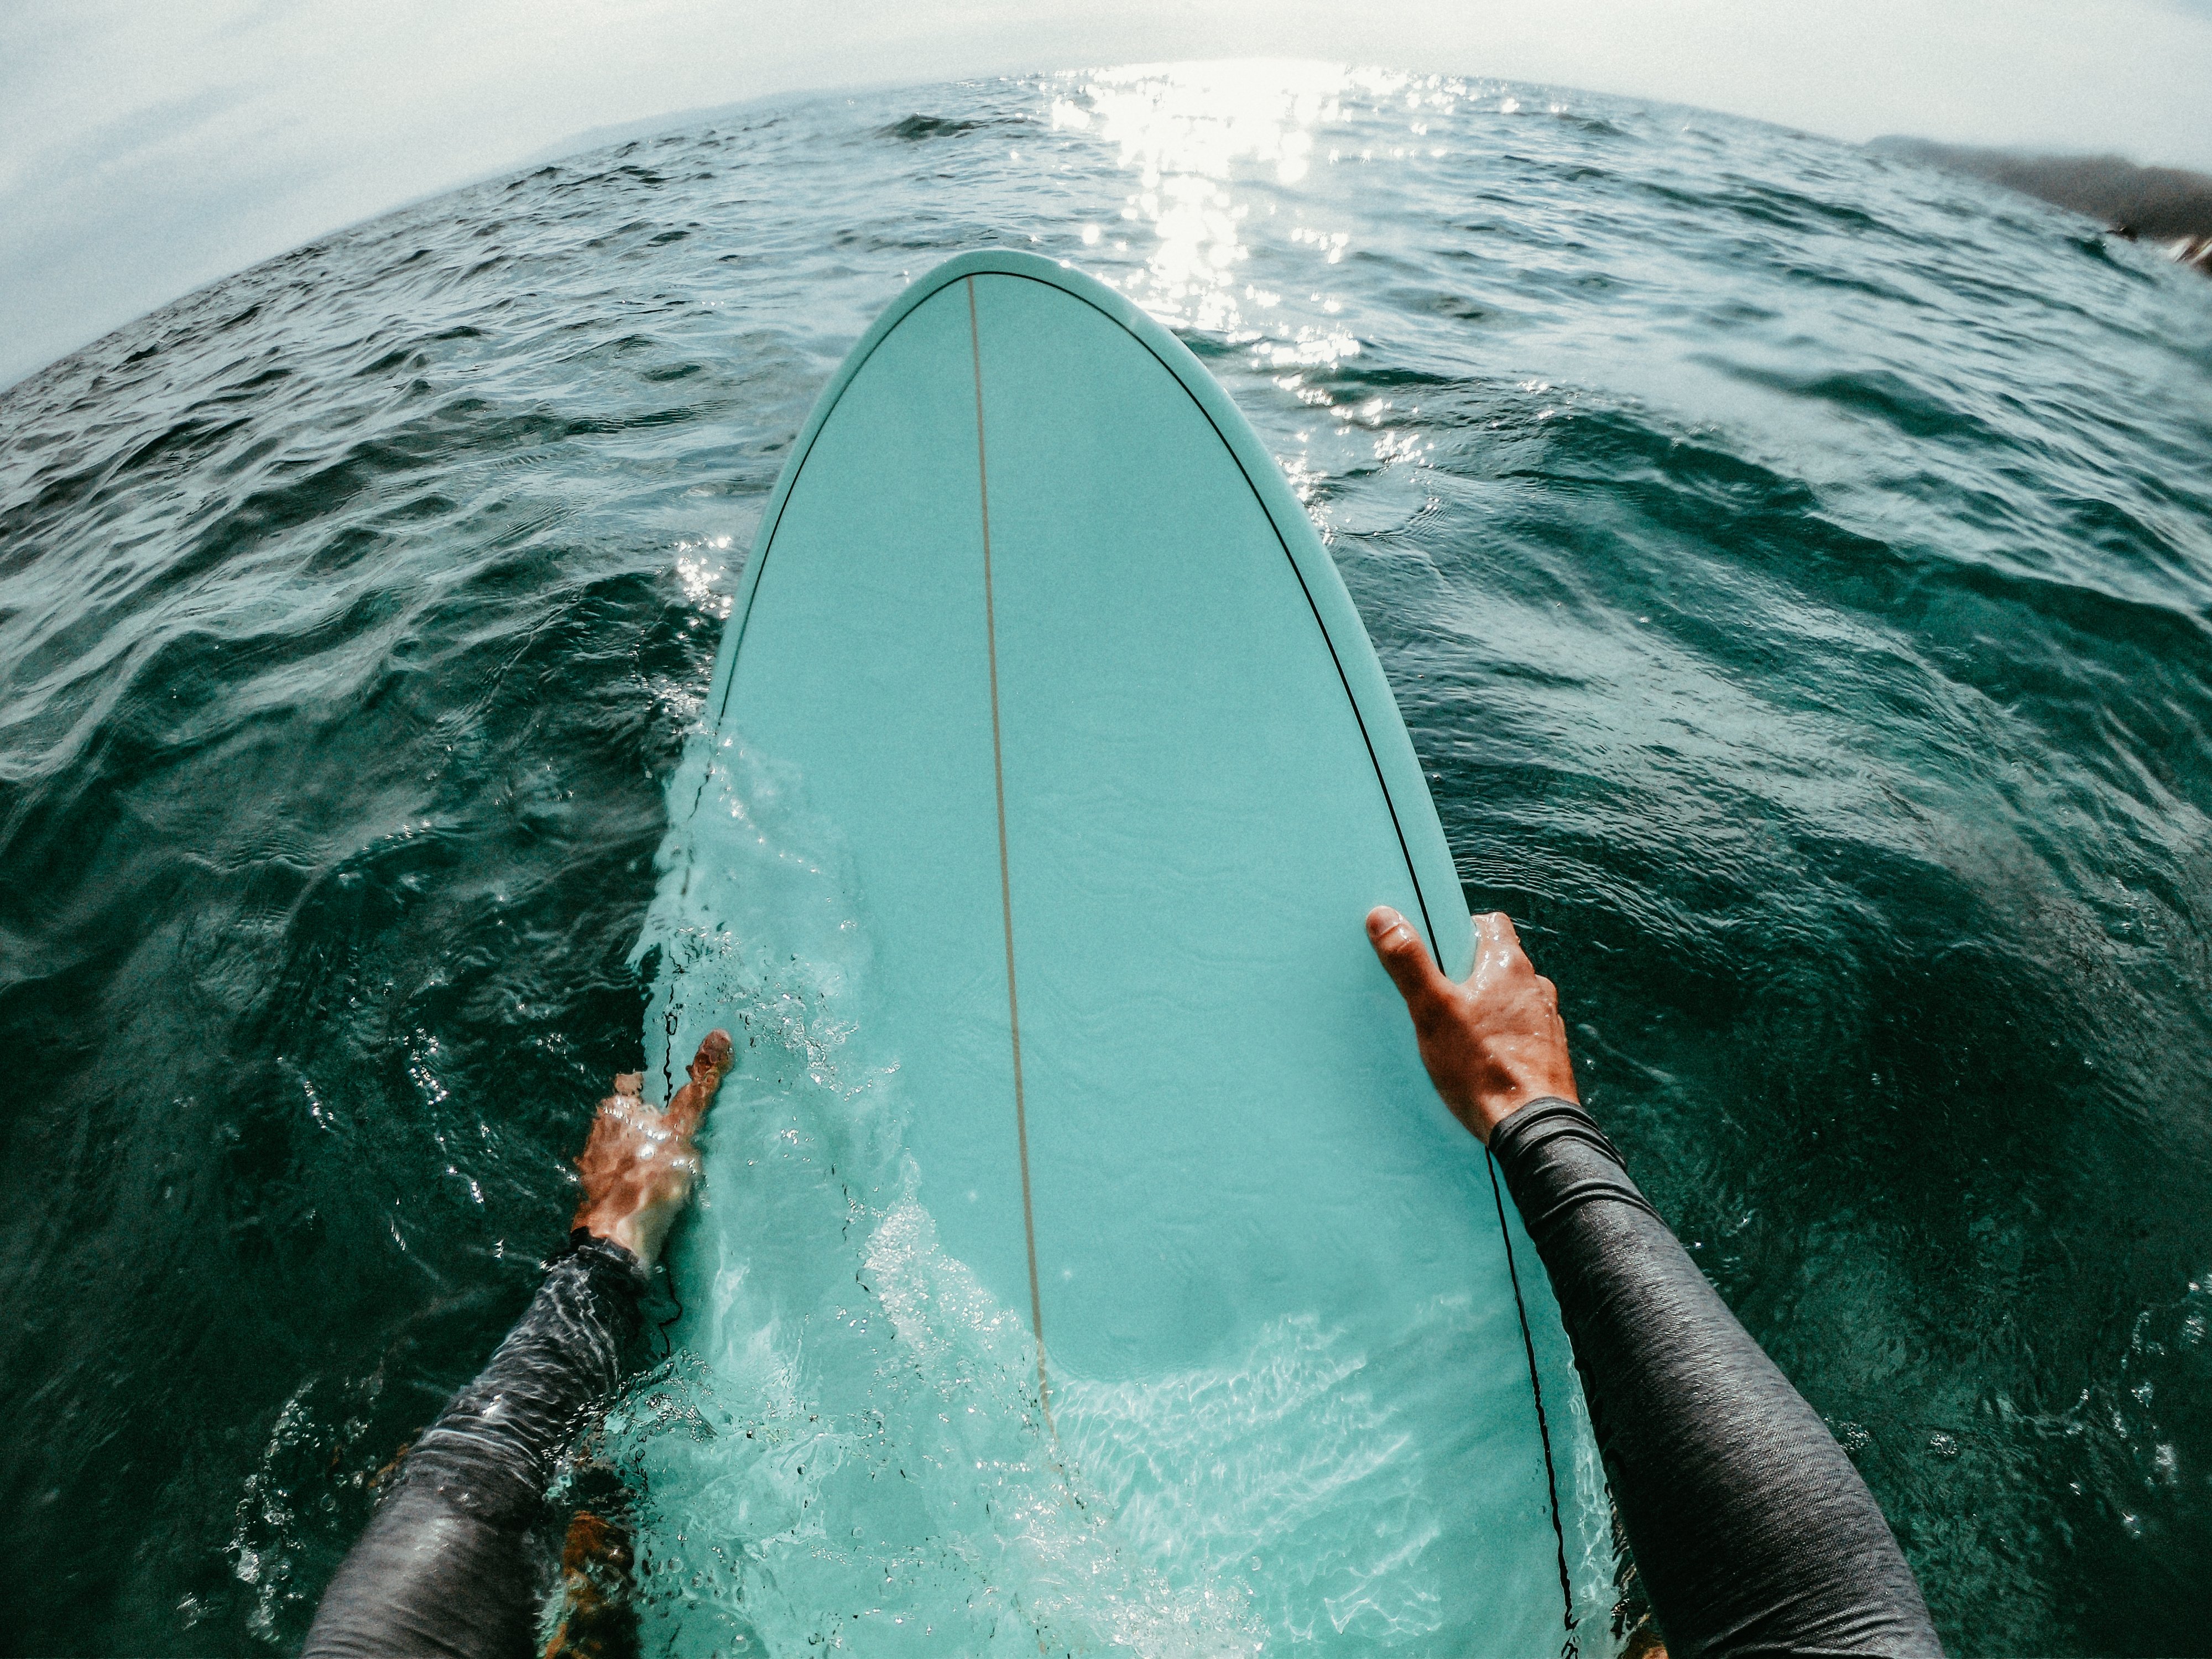 Surfboard surfing